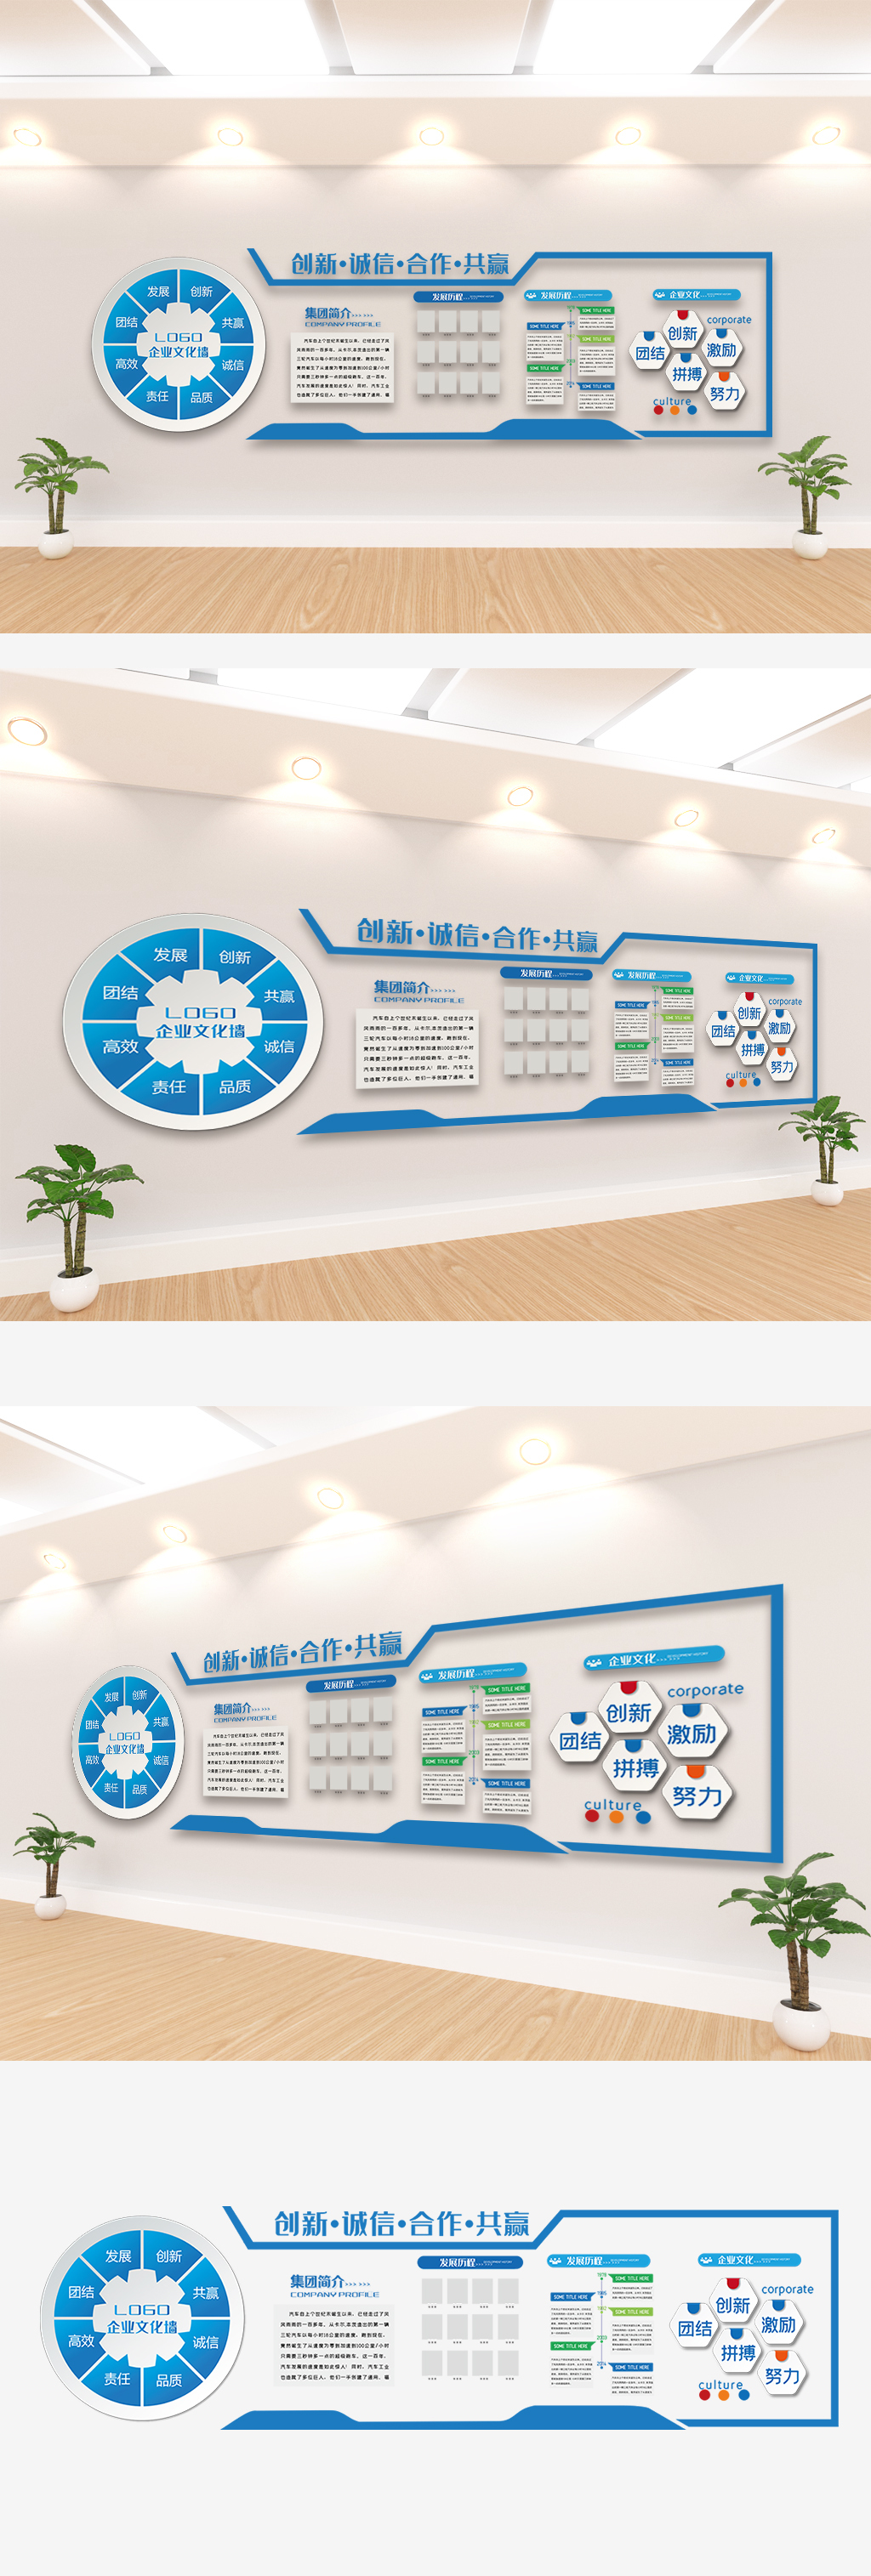 企业宣传办公室文化墙设计模板素材图片